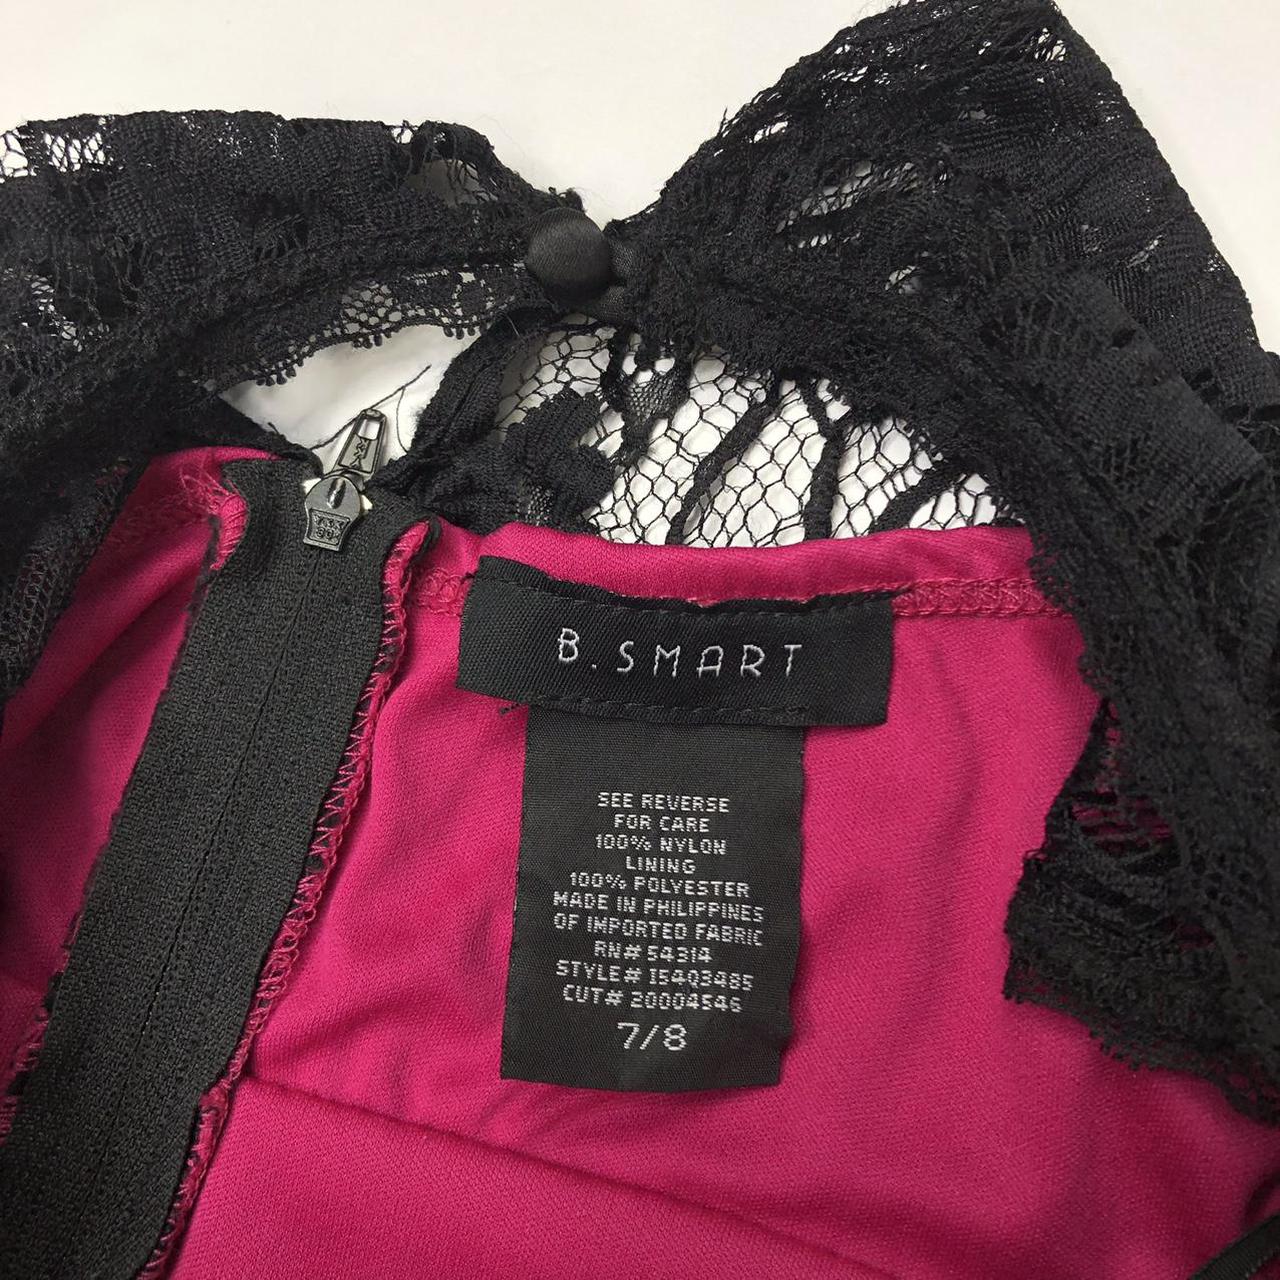 Product Image 4 - Black lace dress

Pink underlay sleeveless